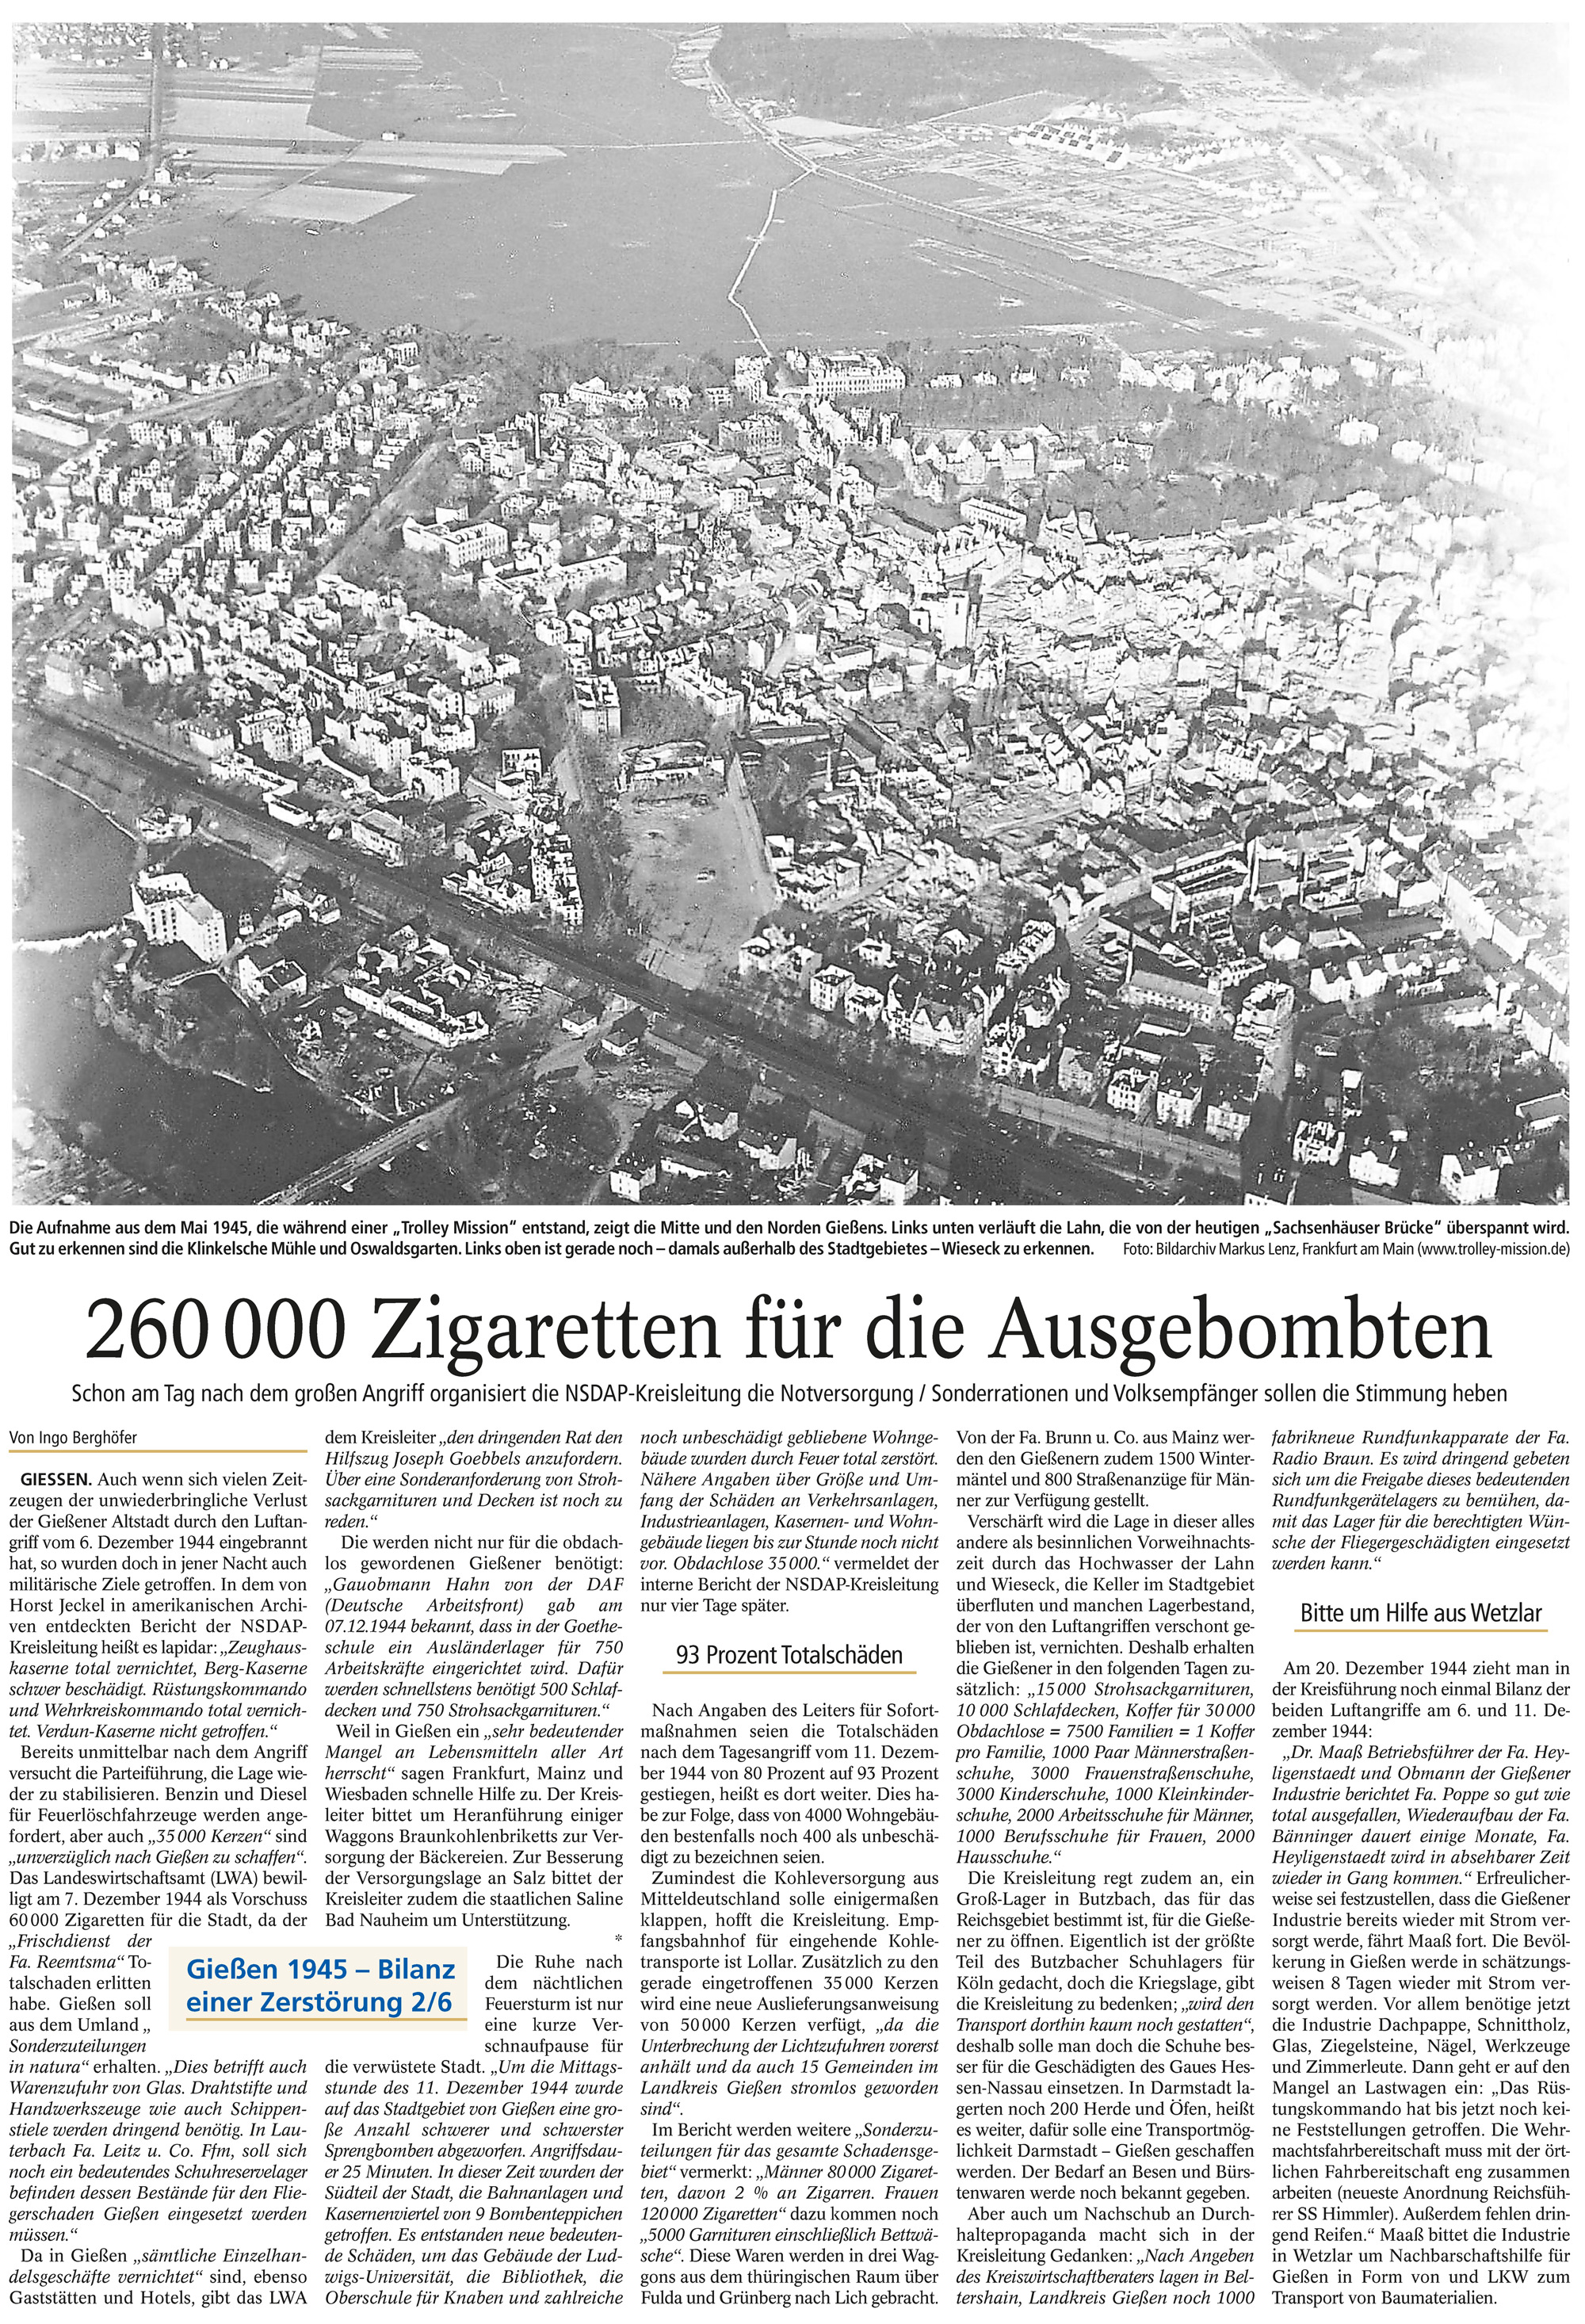 Zeitungsartikel 260.000 Zigaretten für die Ausgebombten - Luftaufnahmen 1945 von Markus Lenz